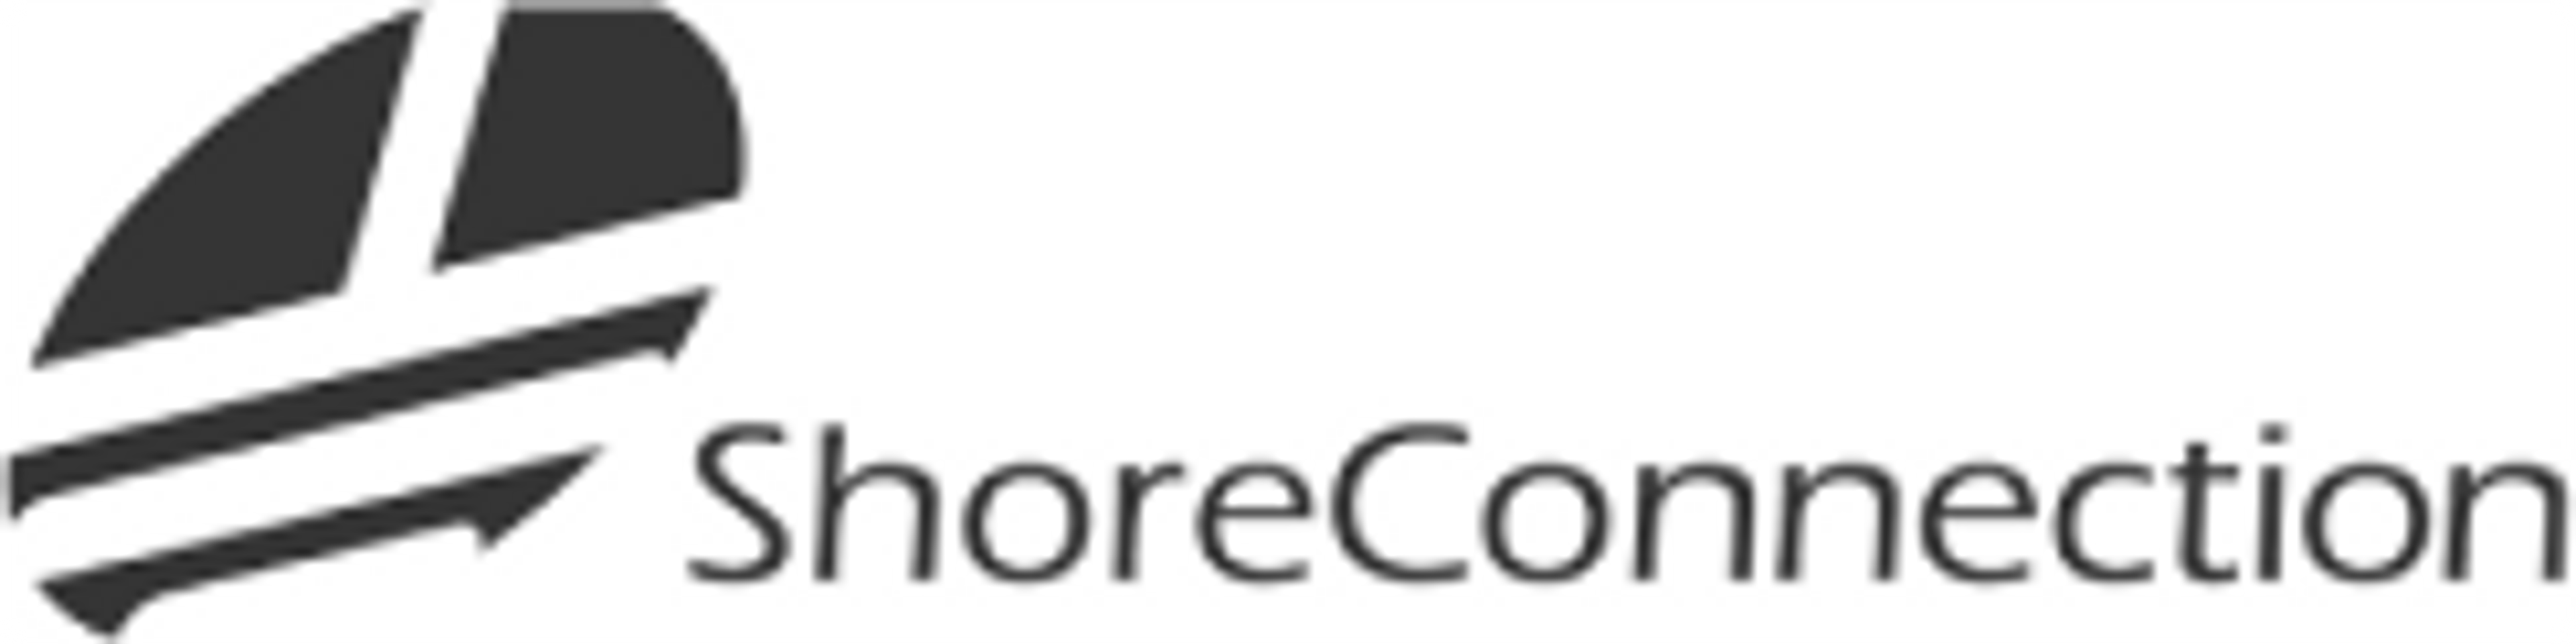 Shore Connection logo